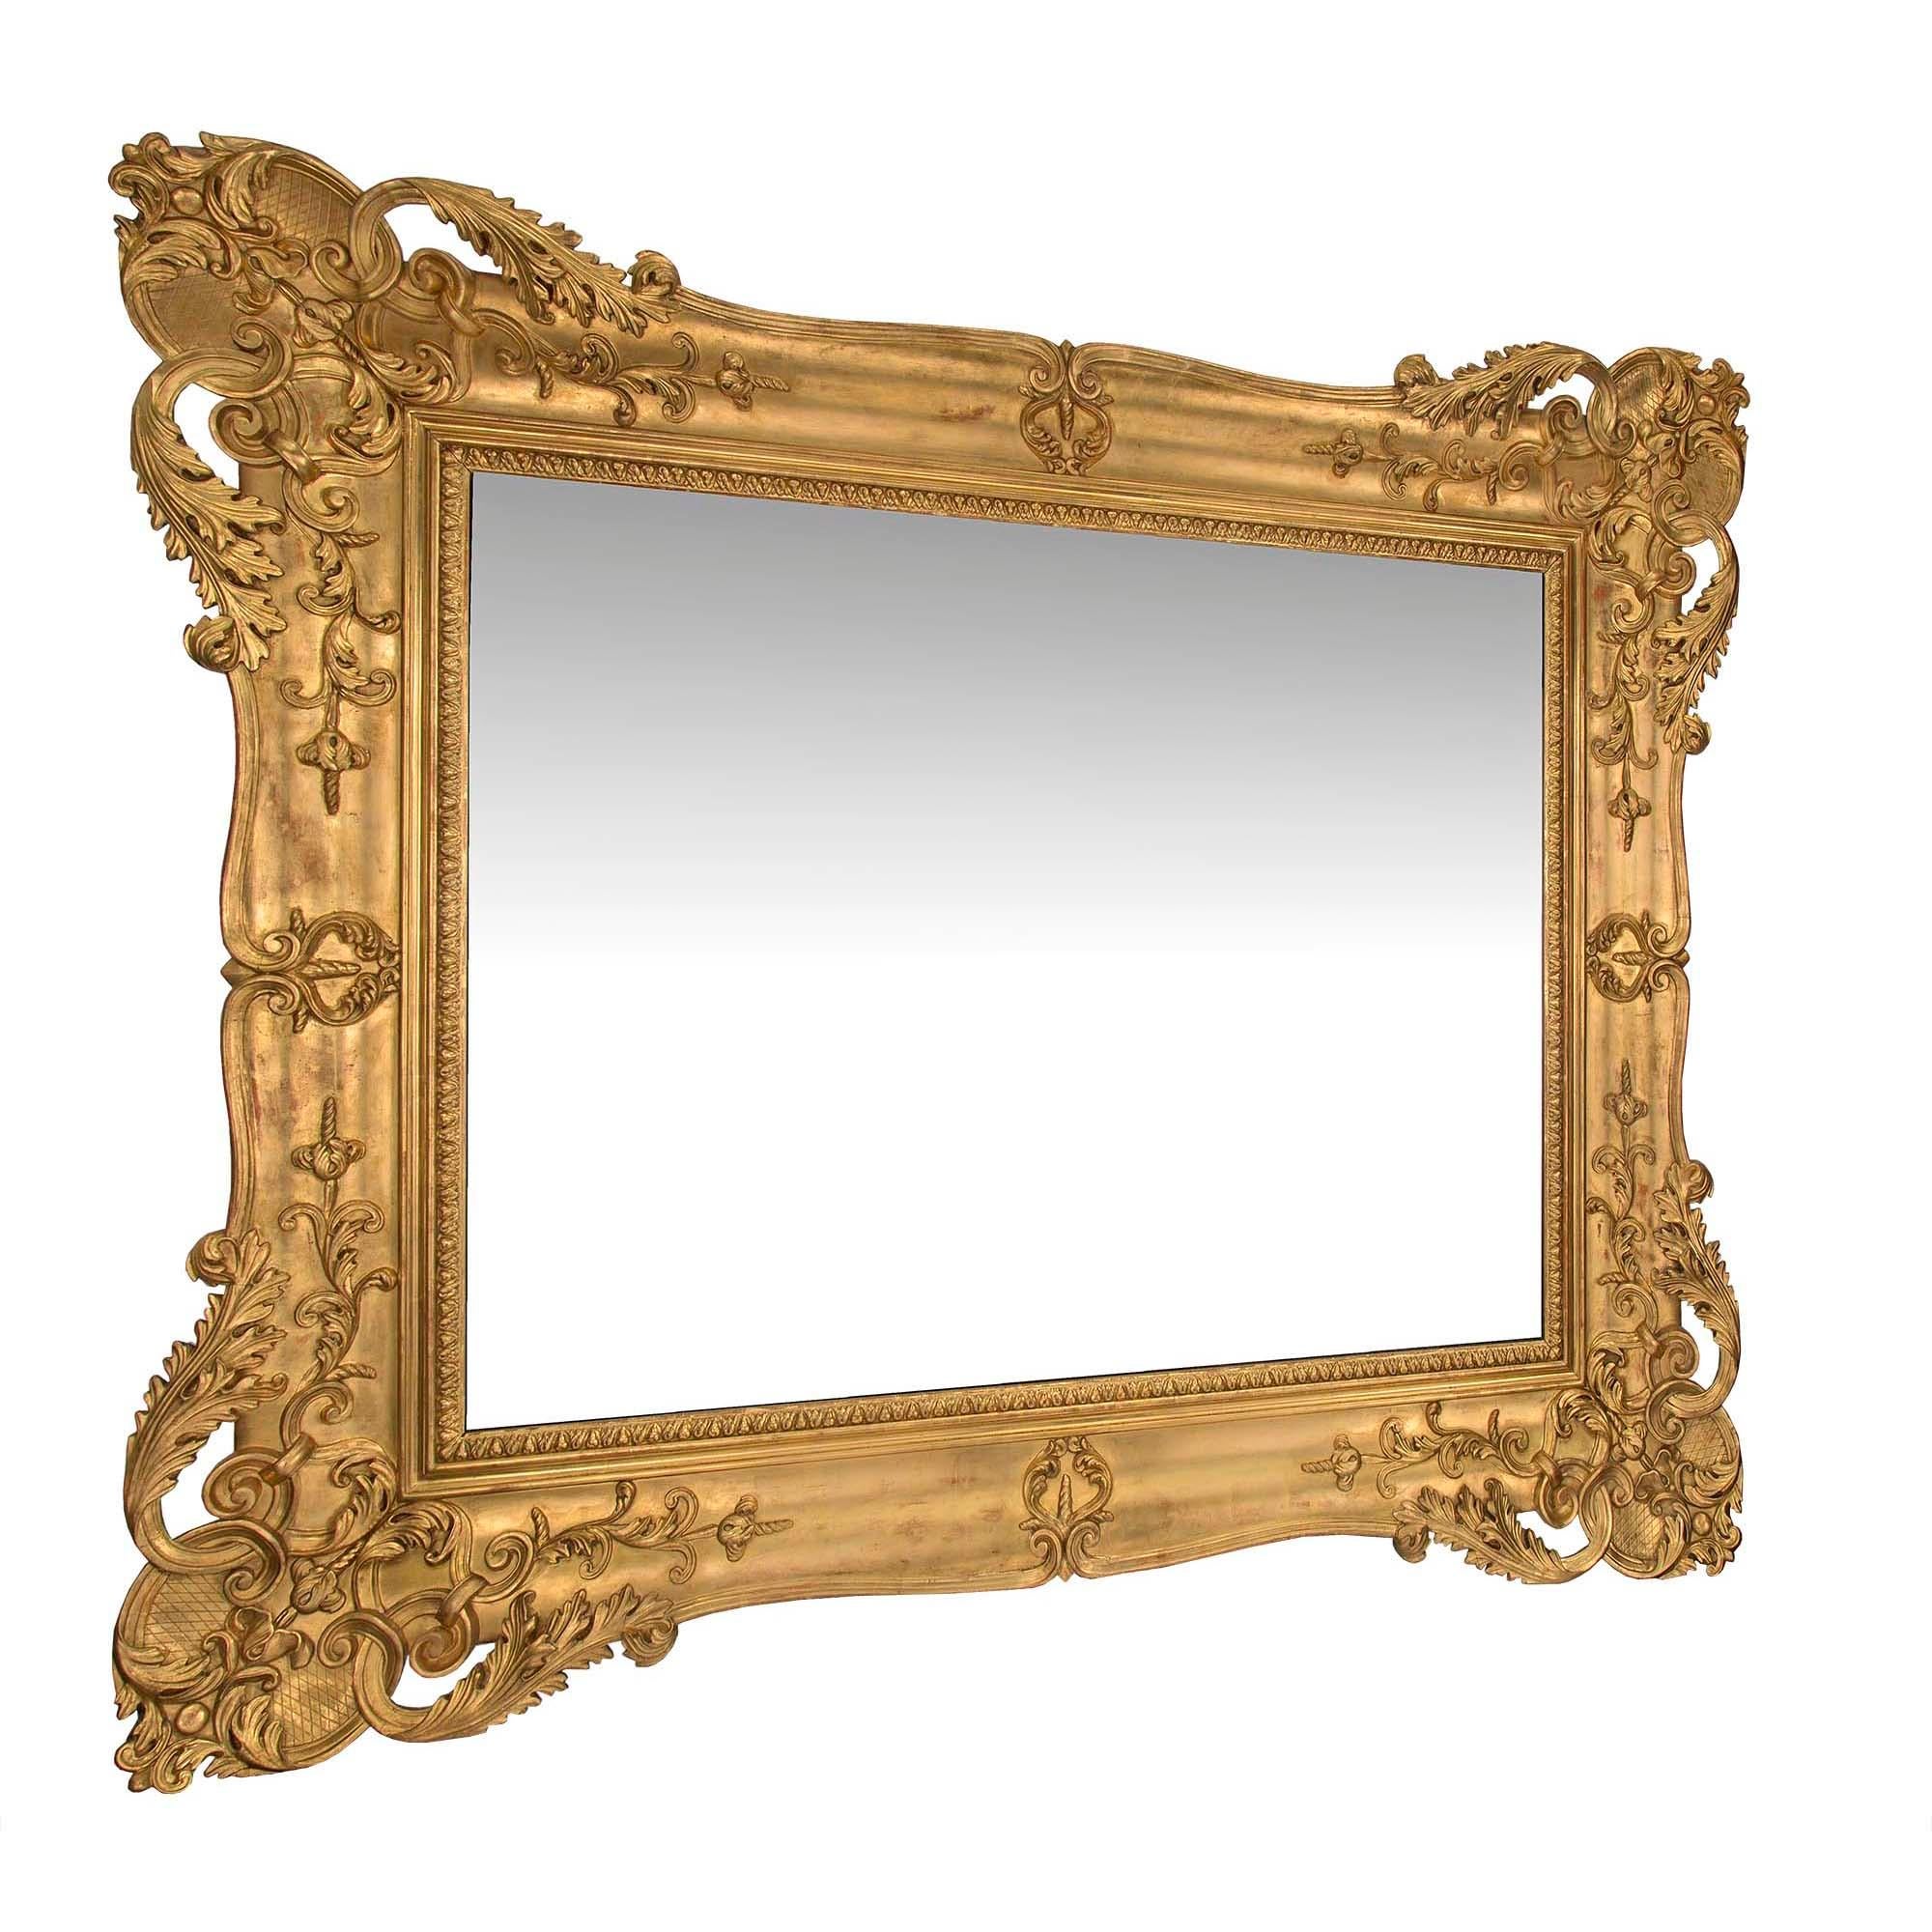 Superbe miroir rectangulaire vénitien italien du milieu du XIXe siècle. La plaque de miroir d'origine est encadrée d'une impressionnante bordure en bois doré à motif de feuillage et à motif moucheté. Le cadre lisse affiche une finition brûlée chaude